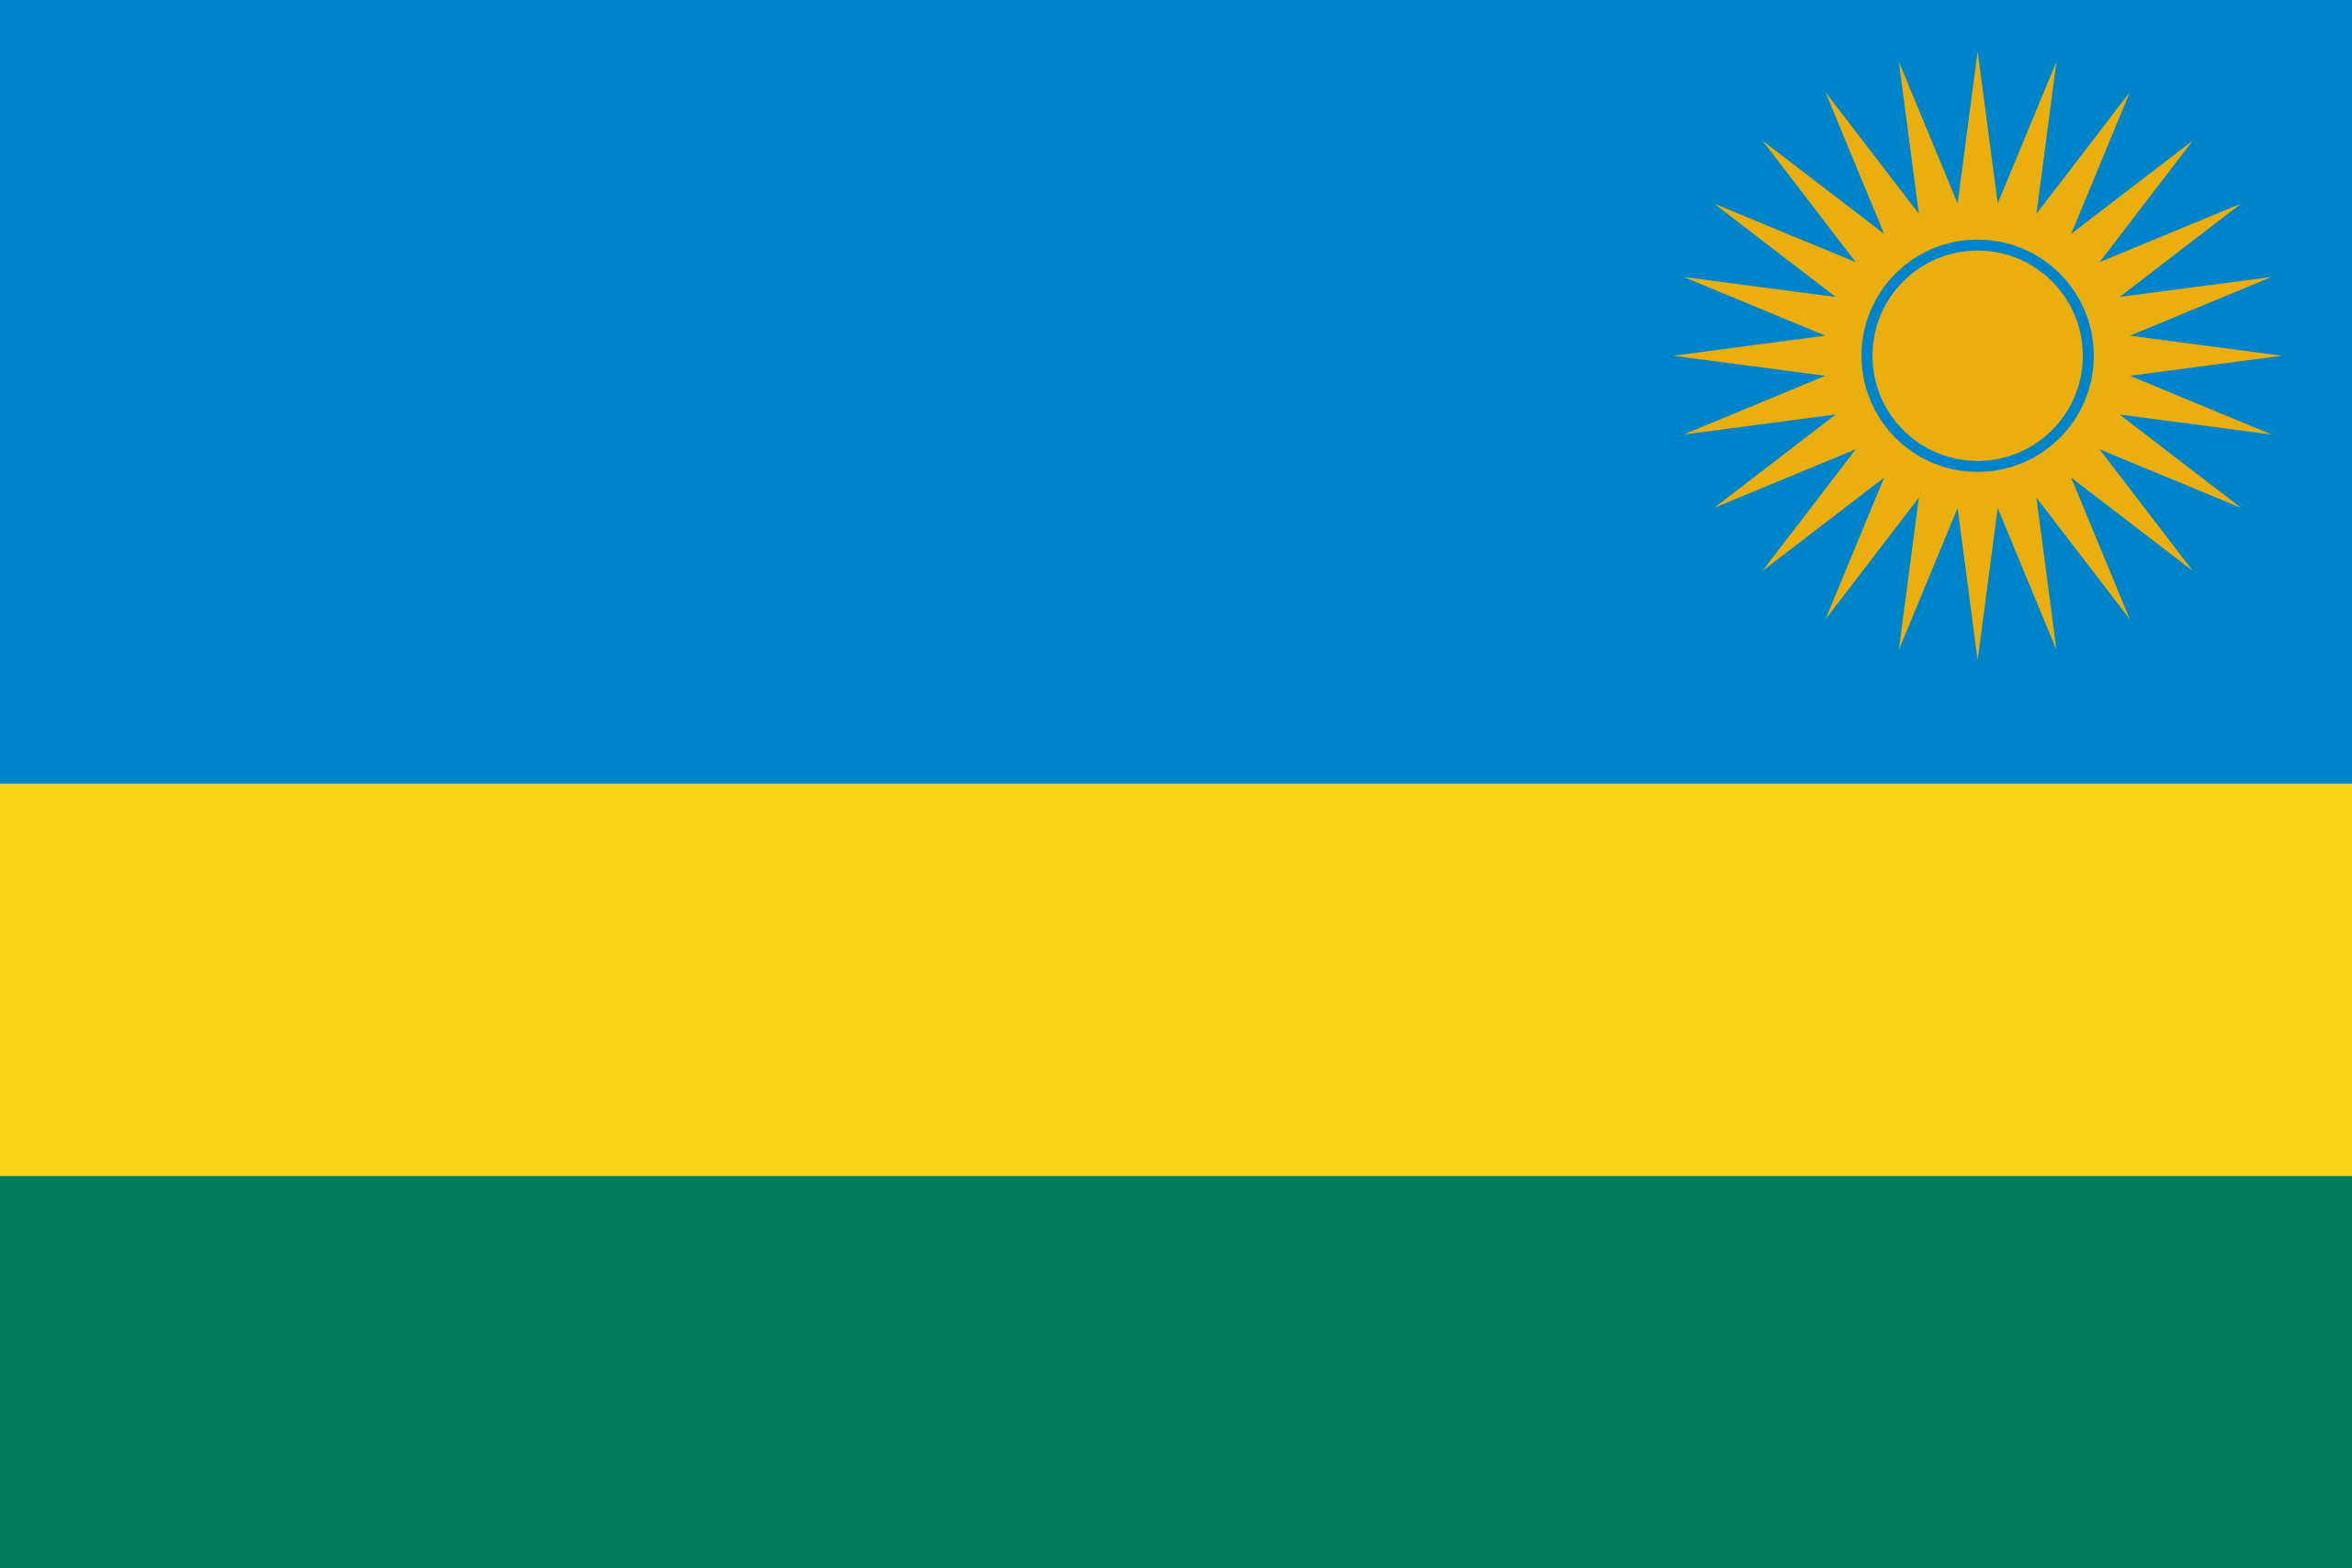 Rwanda's flag